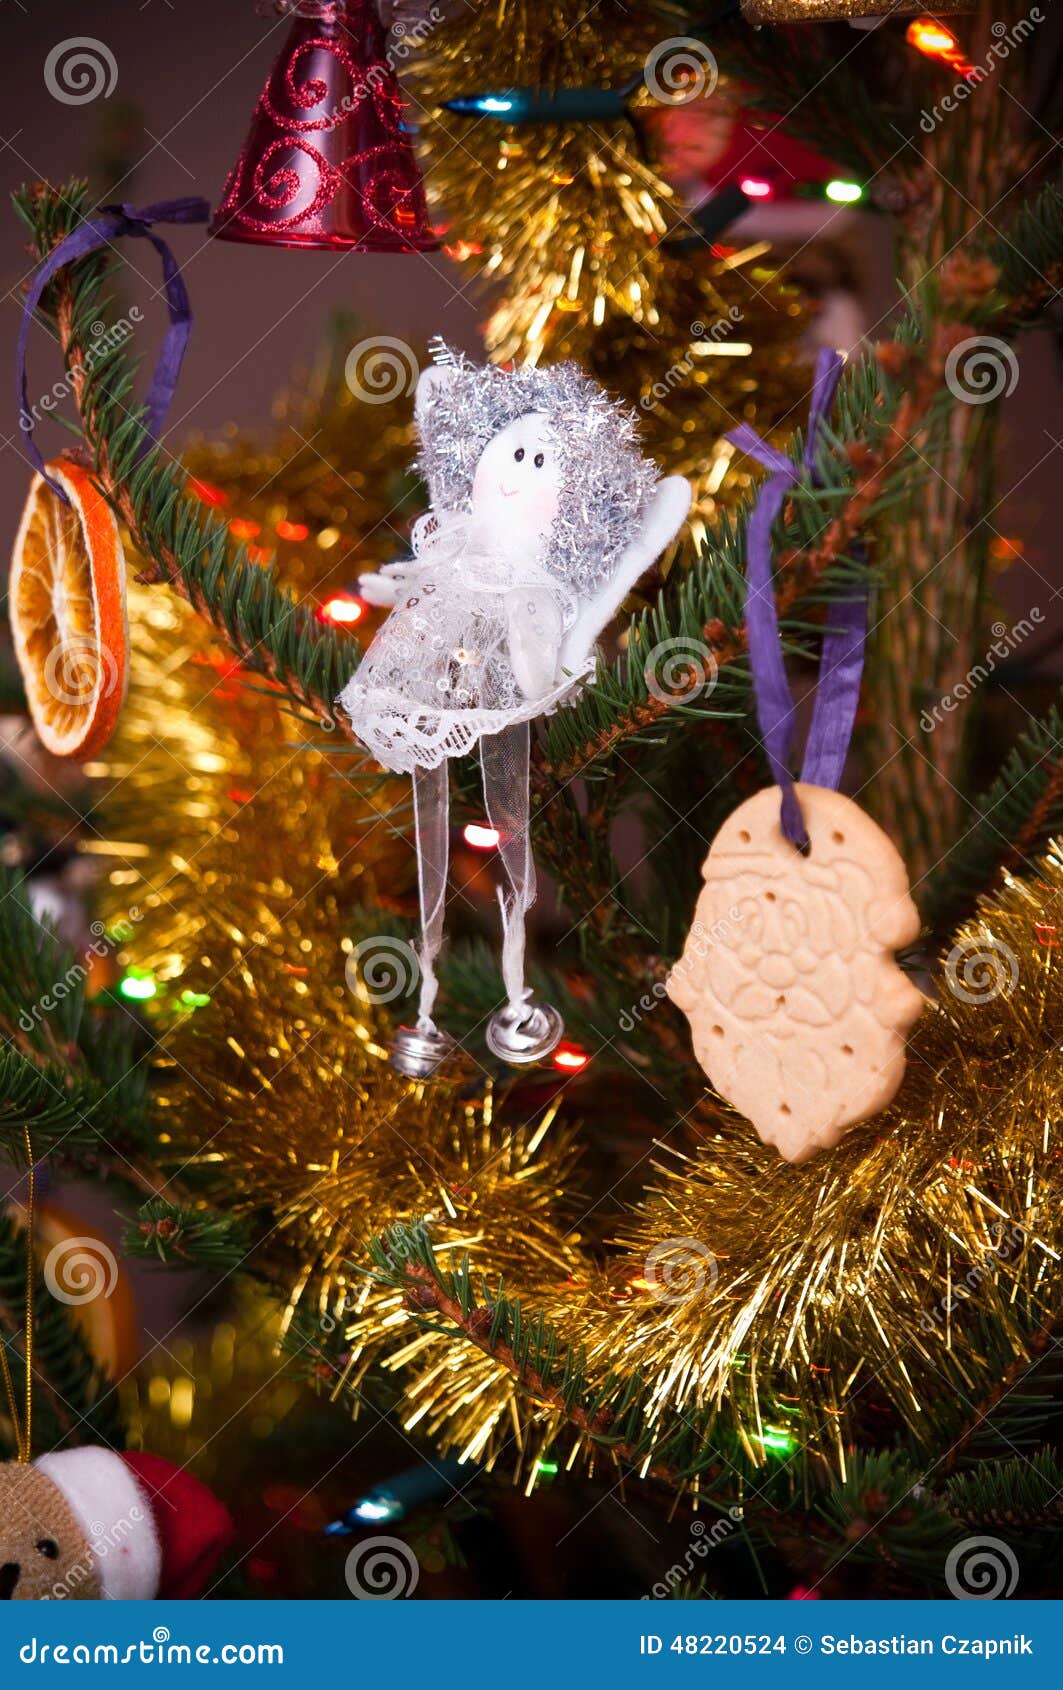 Decorazioni Natalizie Casalinghe.Decorazioni Casalinghe Dell Albero Di Natale Fotografia Stock Immagine Di Albero Natale 48220524